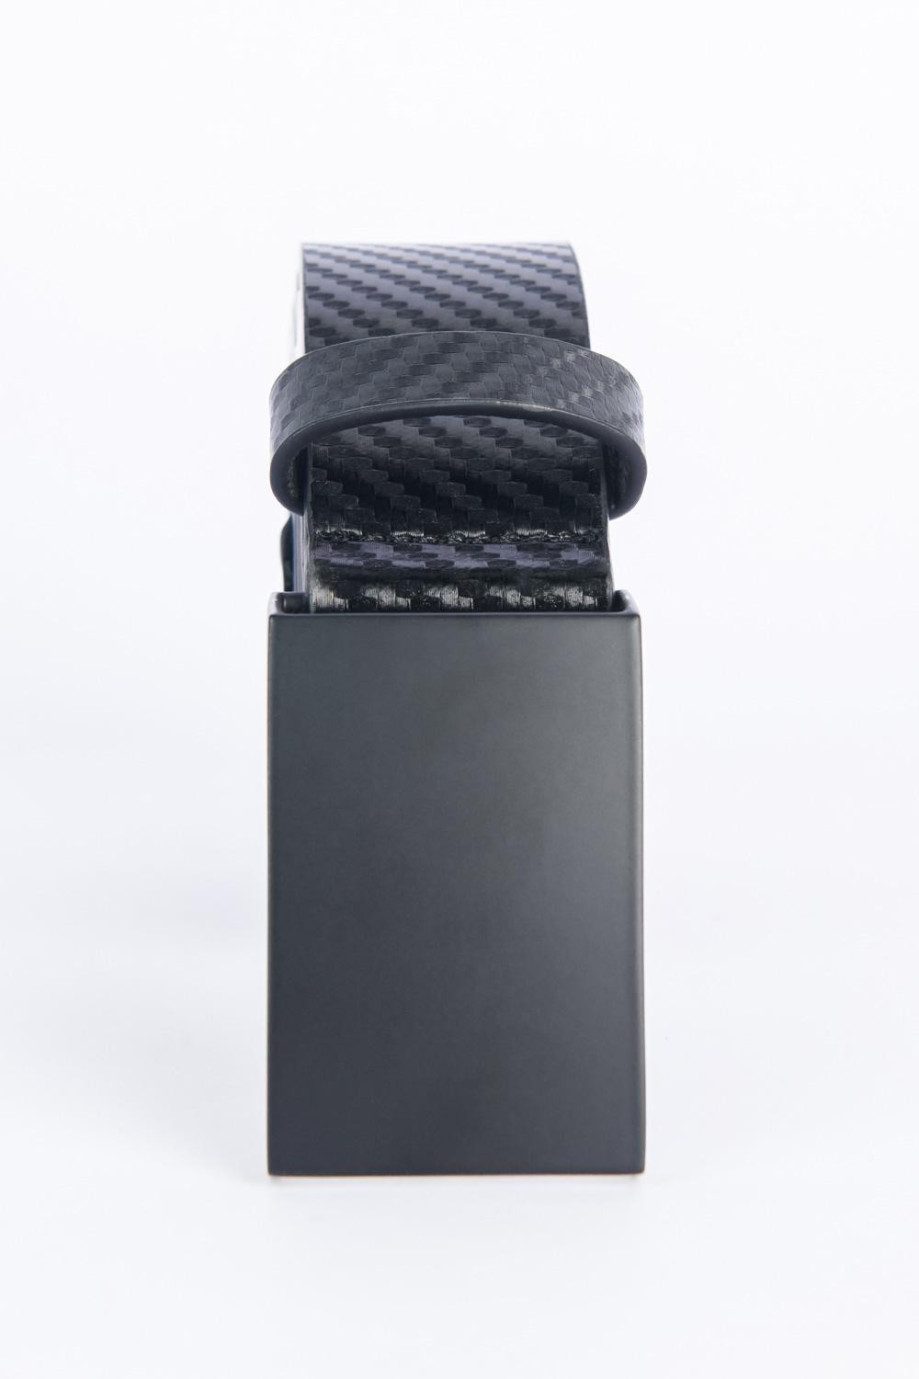 Cinturón sintético negro con texturas y hebilla metálica completa